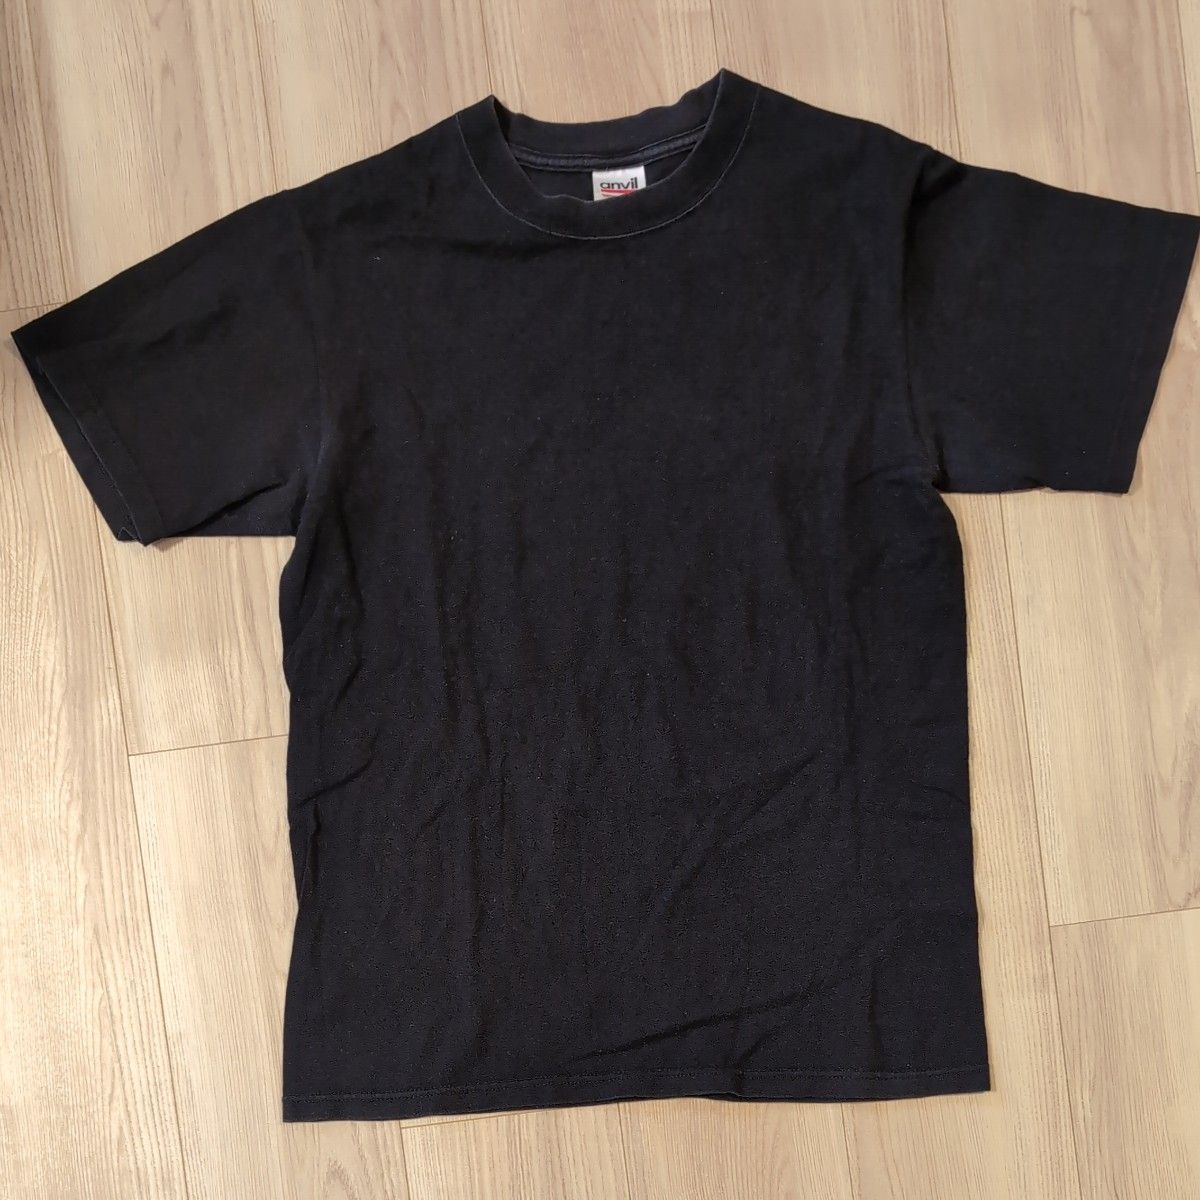 anvil t-shirt black Ssize